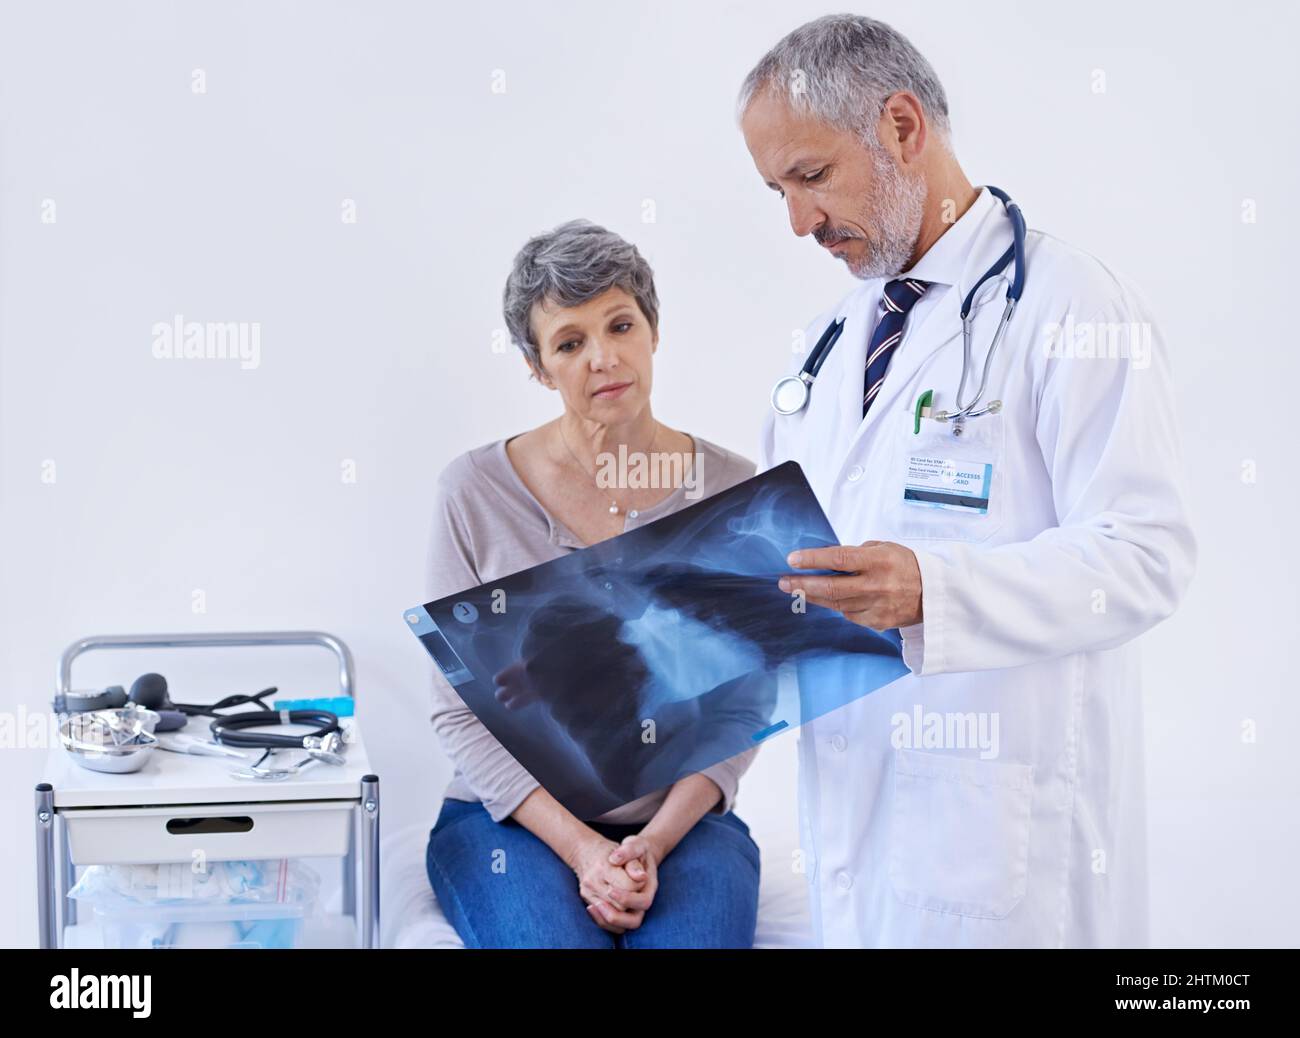 Semplificare i raggi X in modo che possa capire. Shot di un medico che spiega una radiografia a un paziente. Foto Stock